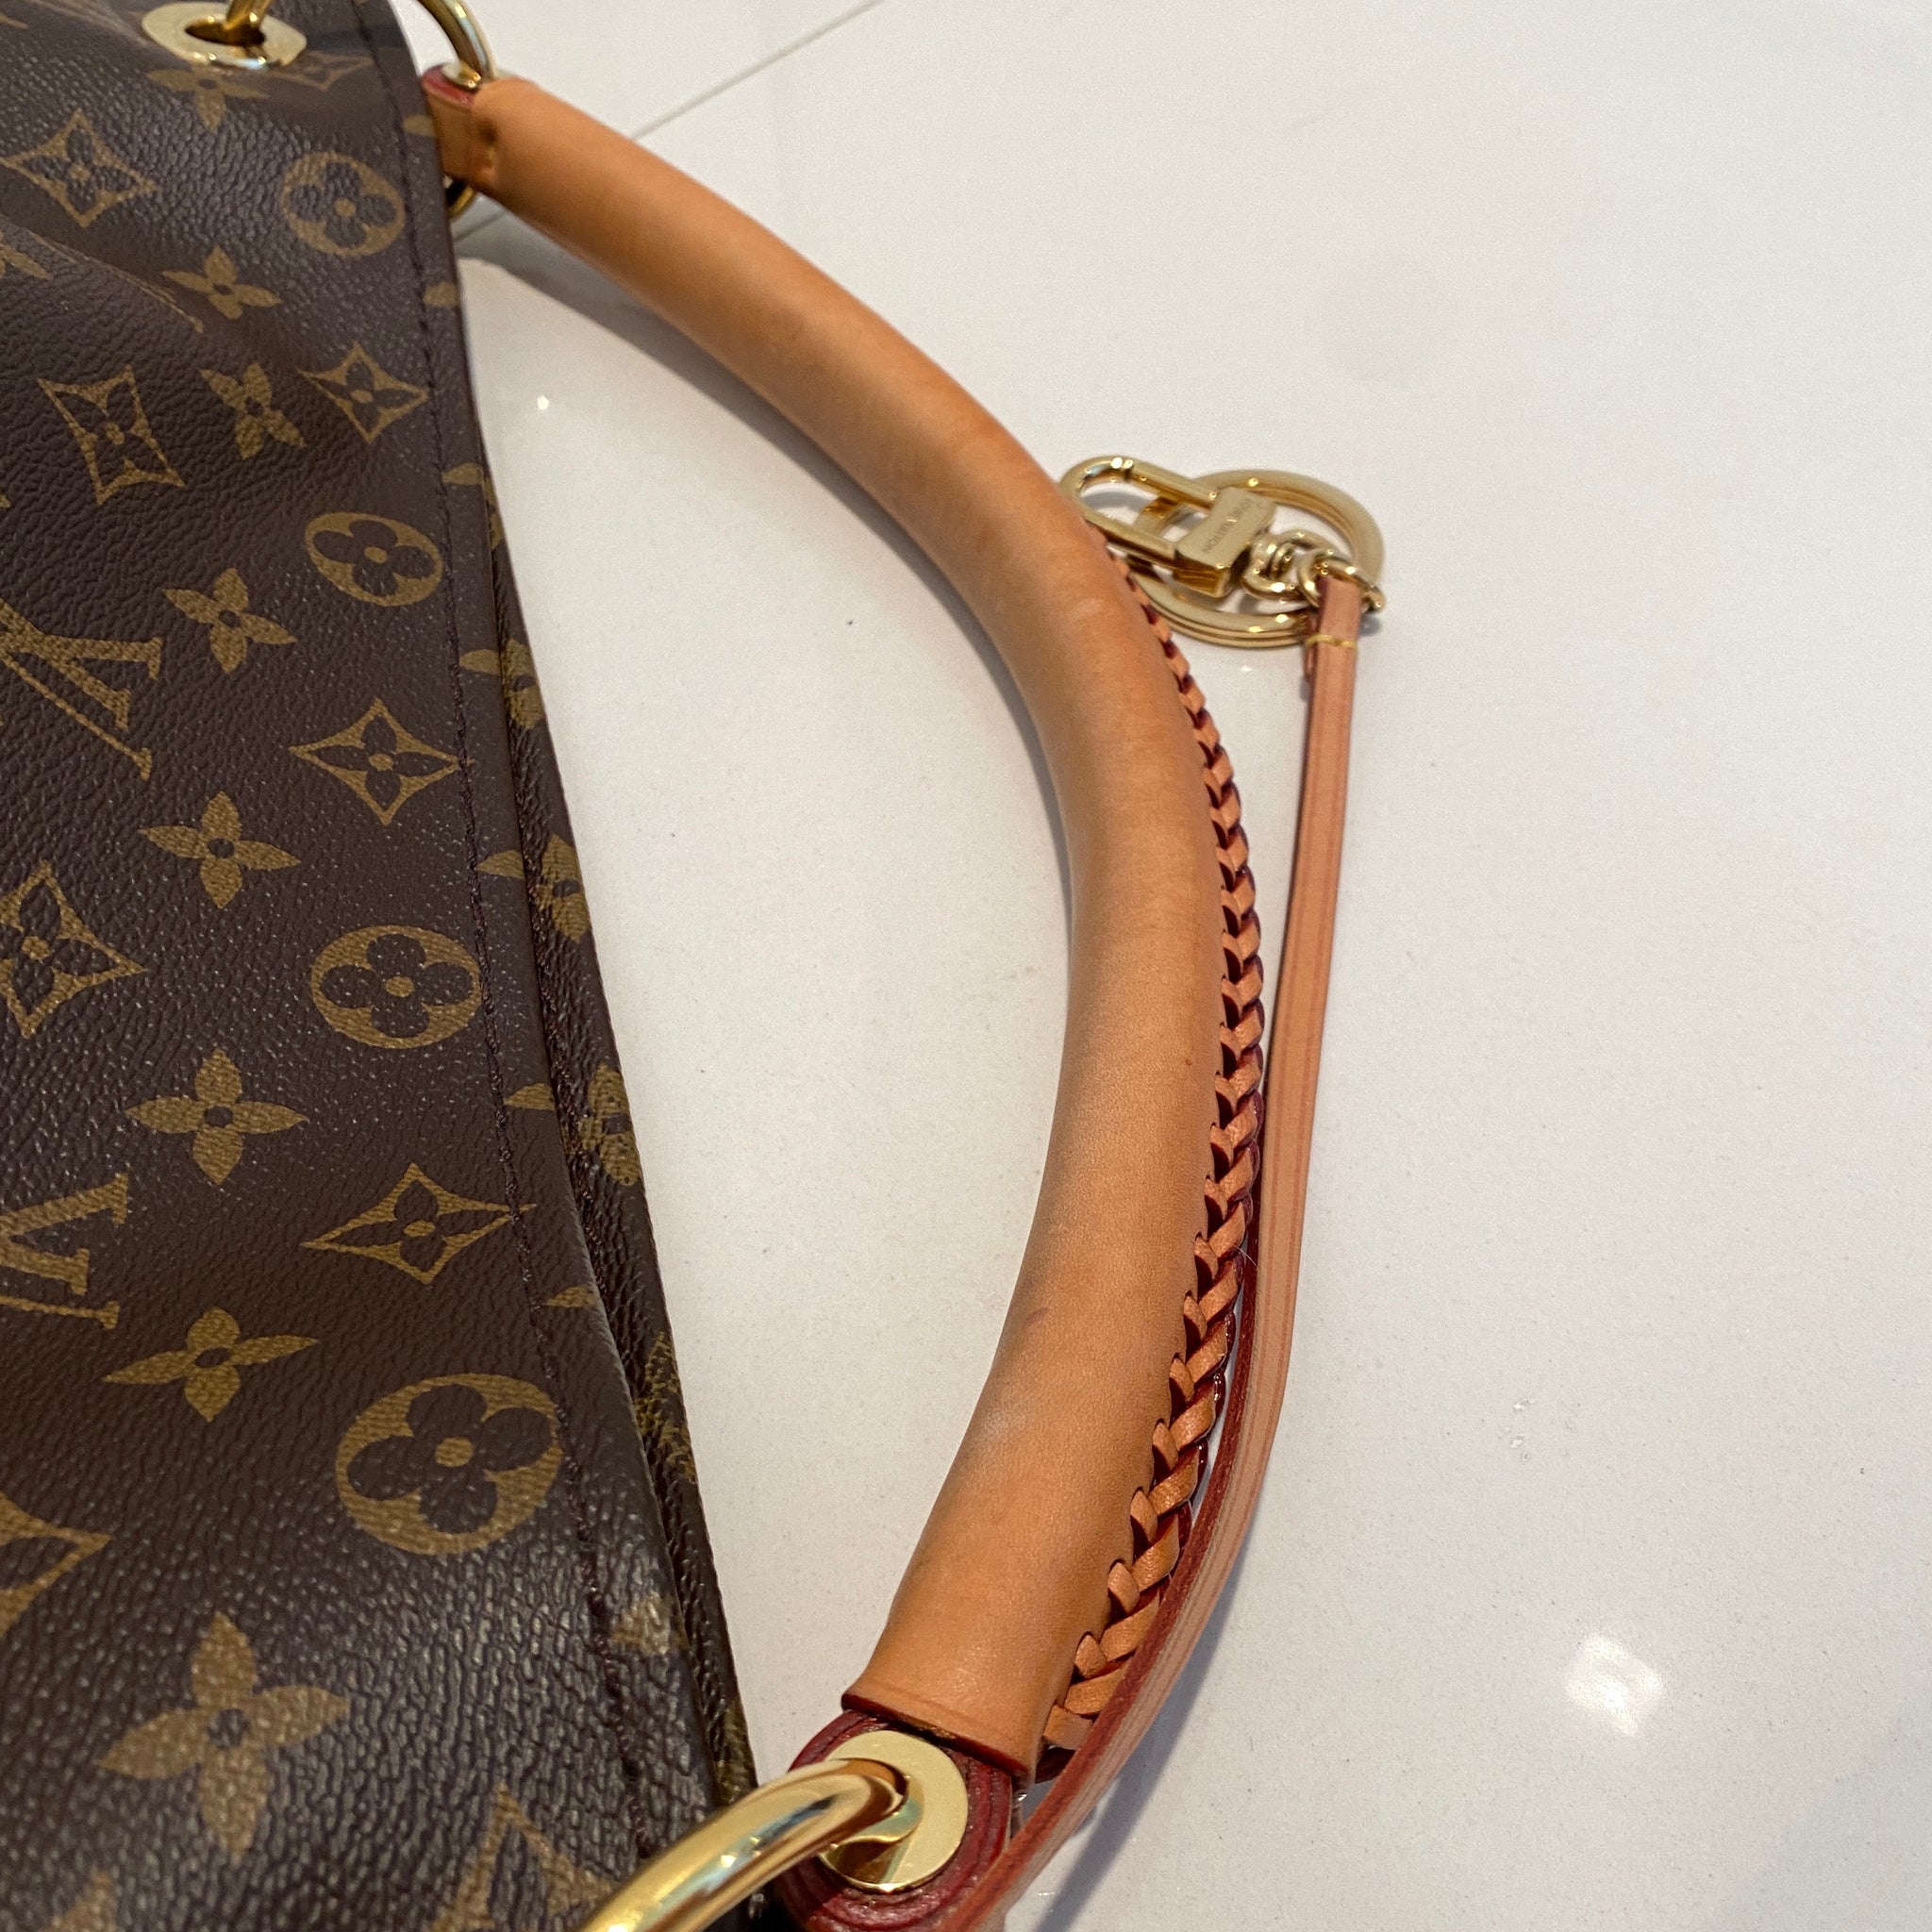 Louis Vuitton Artsy MM Monogram – Luxi Bags